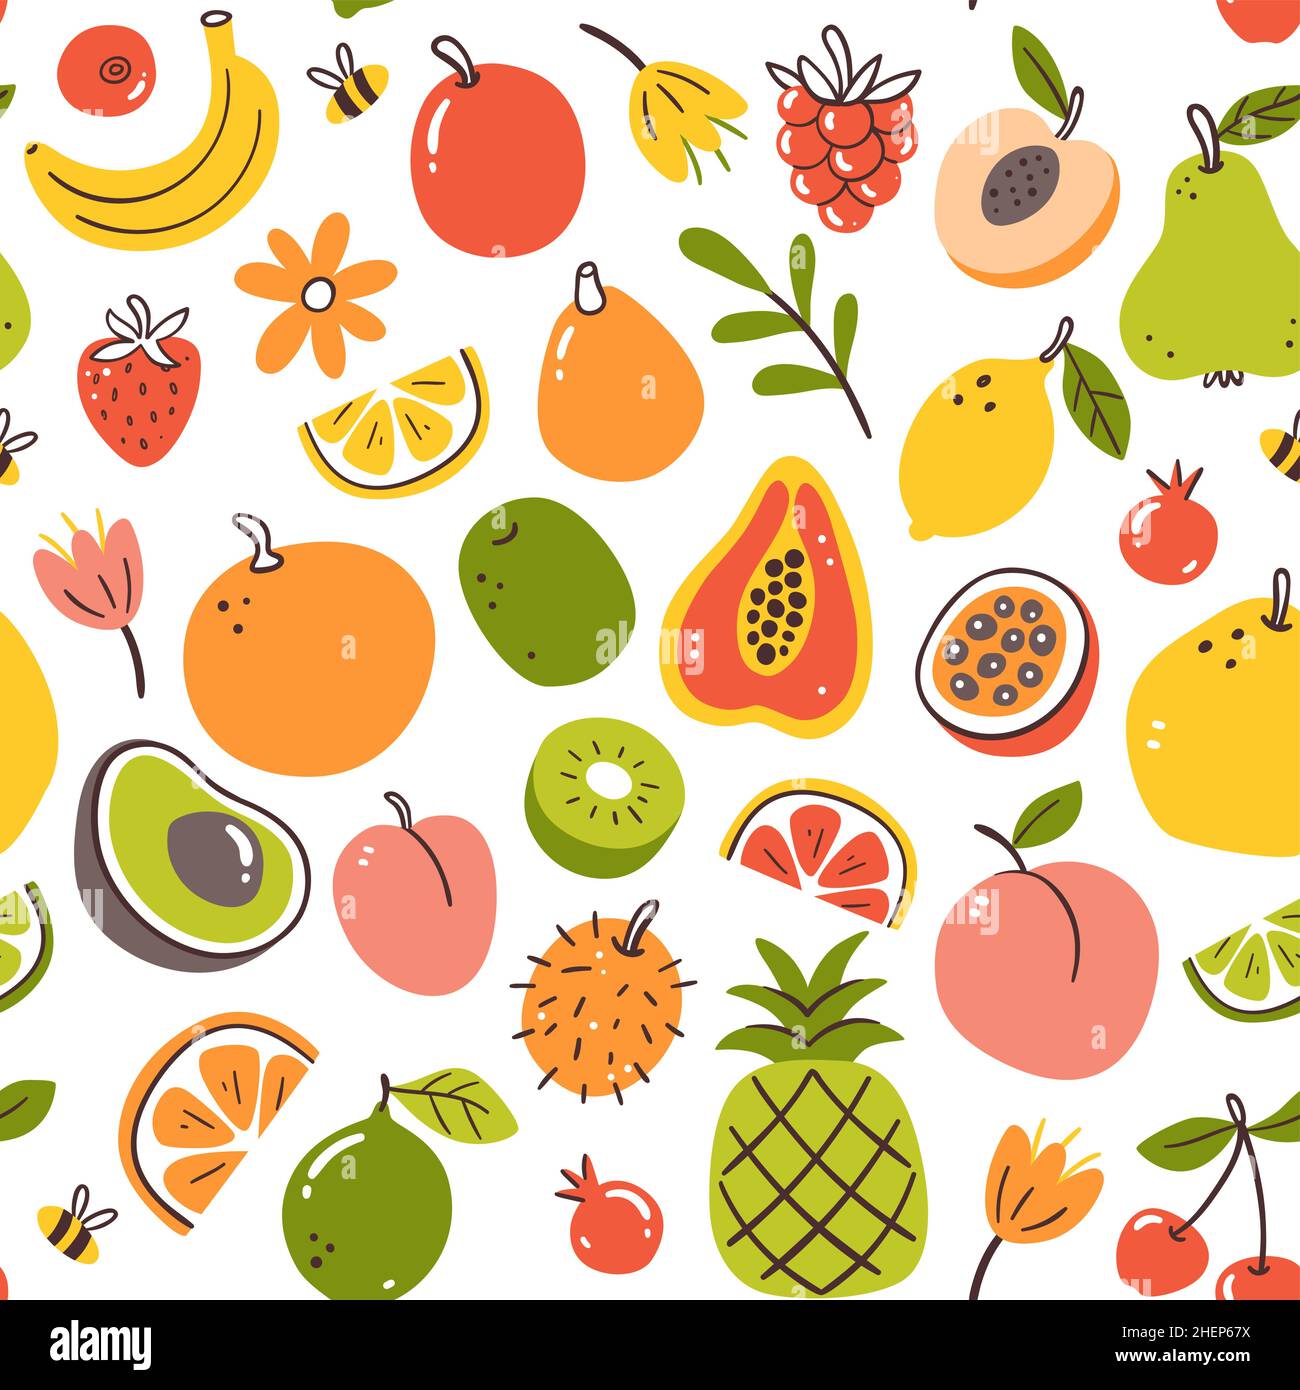 Farbenfrohe Frühlingsfrüchte mit nahtlosem Muster. Isolierte Früchte auf weißem Hintergrund. Vektorgrafik. Stock Vektor